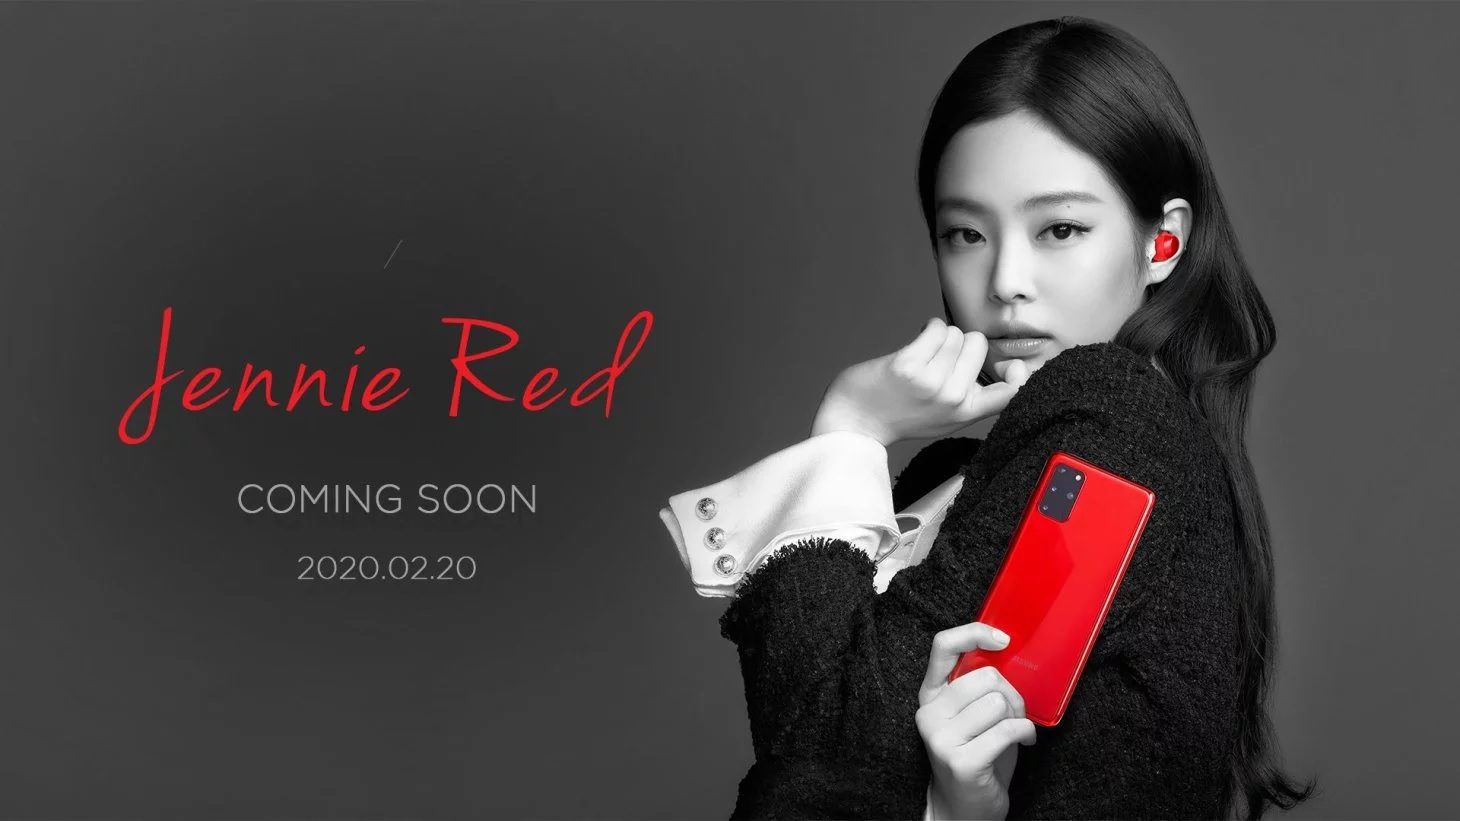 Samsung está vendiendo un teléfono Samsung Galaxy S20 + Jenny Red de la marca Blackpink y un paquete Galaxy Buds +